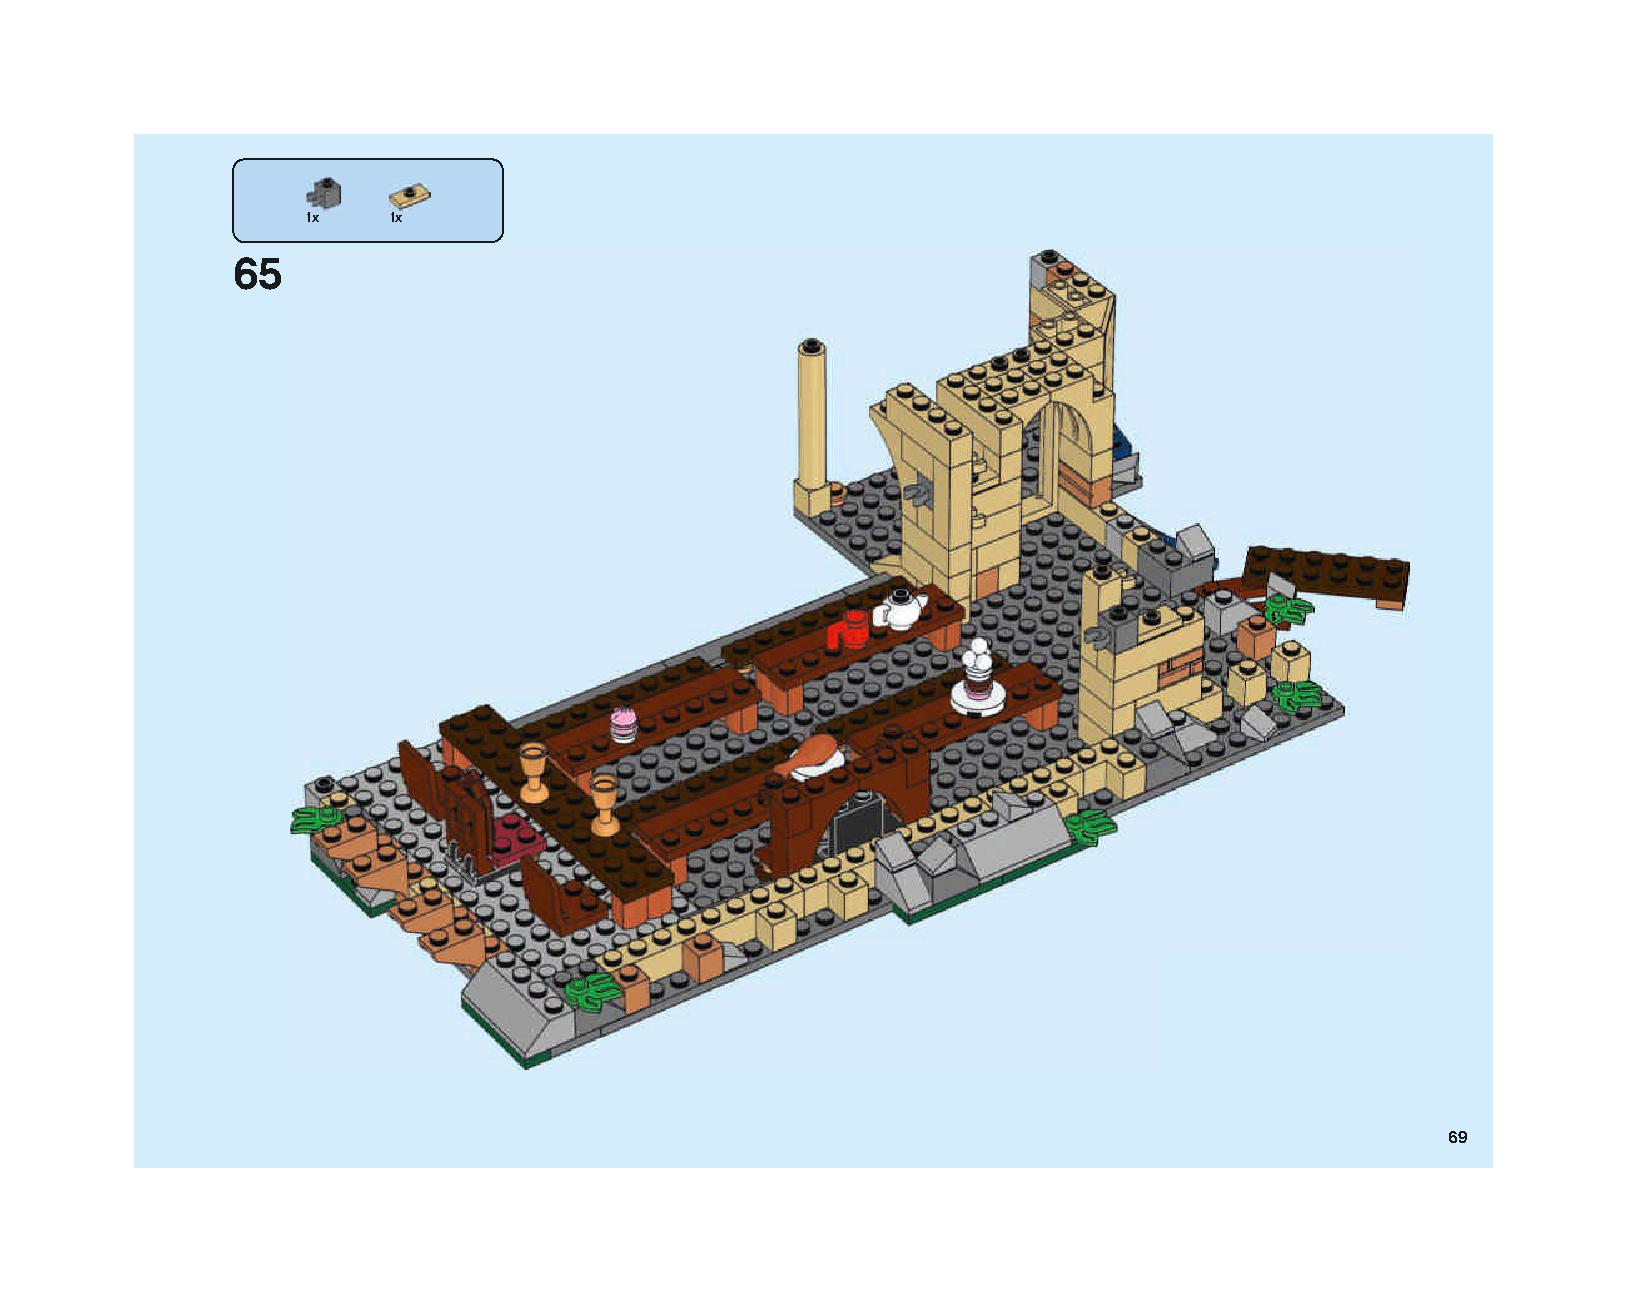 ホグワーツの大広間 75954 レゴの商品情報 レゴの説明書・組立方法 69 page